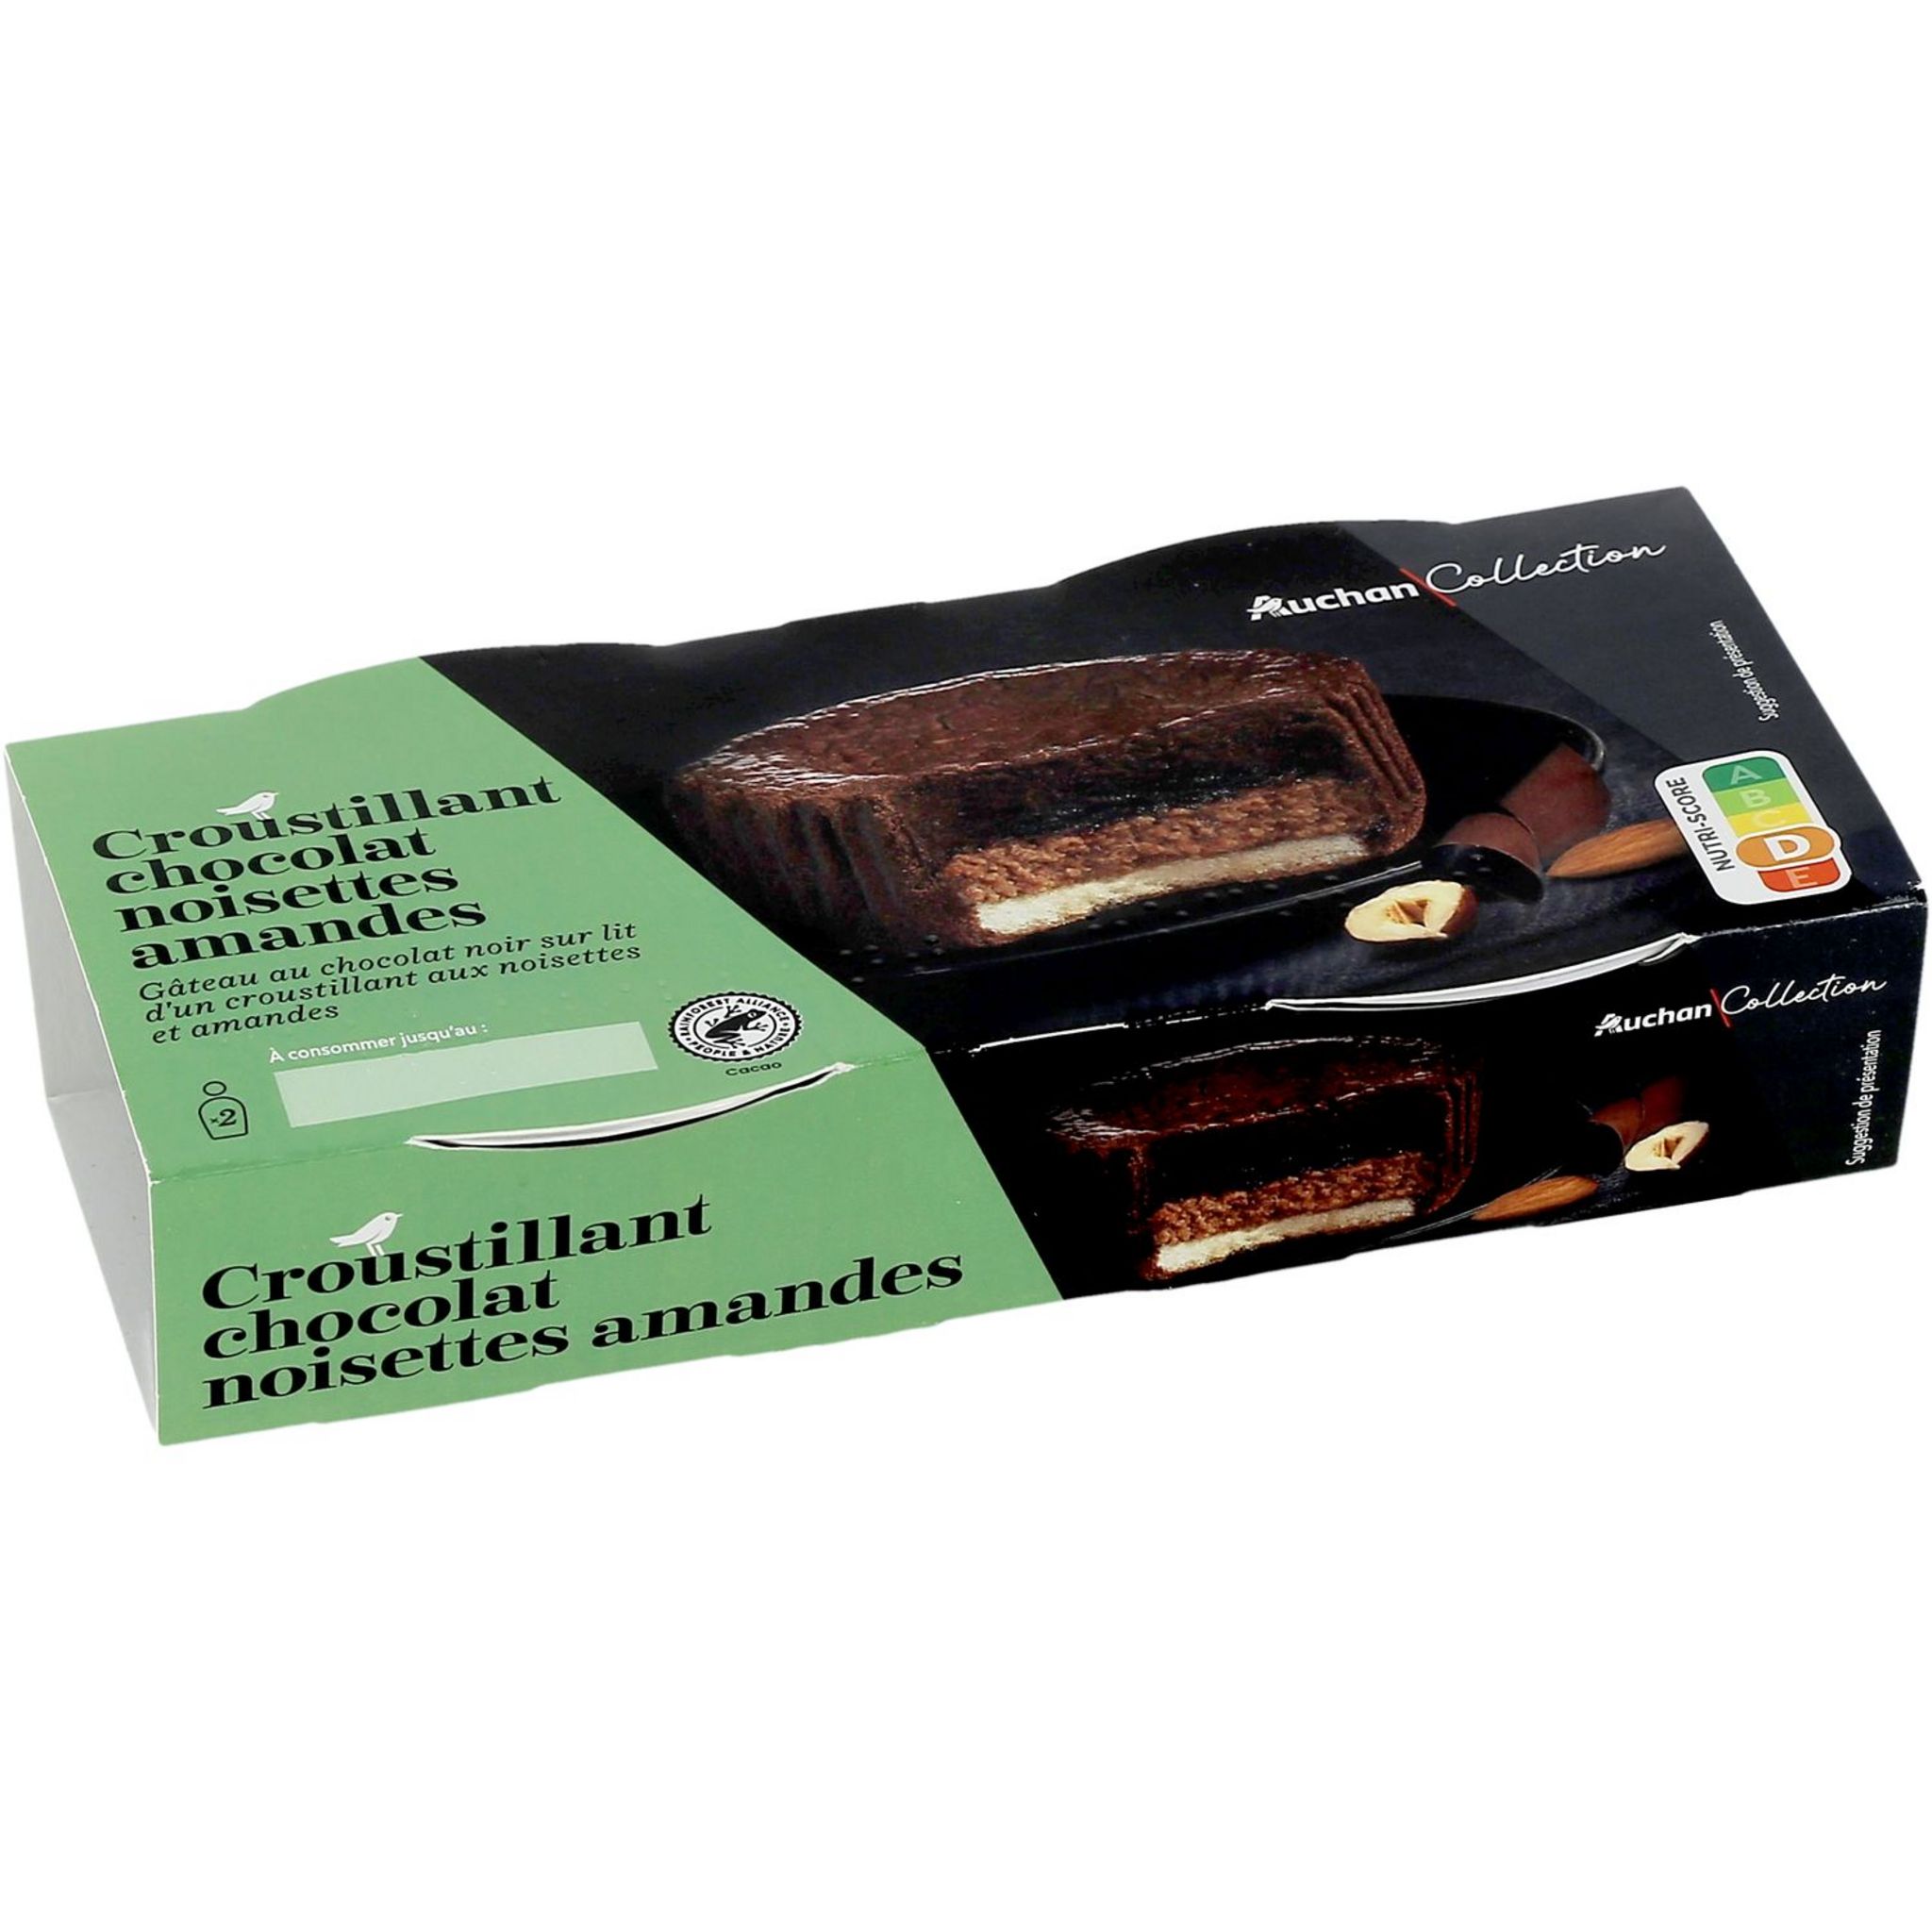 AUCHAN COLLECTION Dessert croustillant au chocolat noisette 2x80g